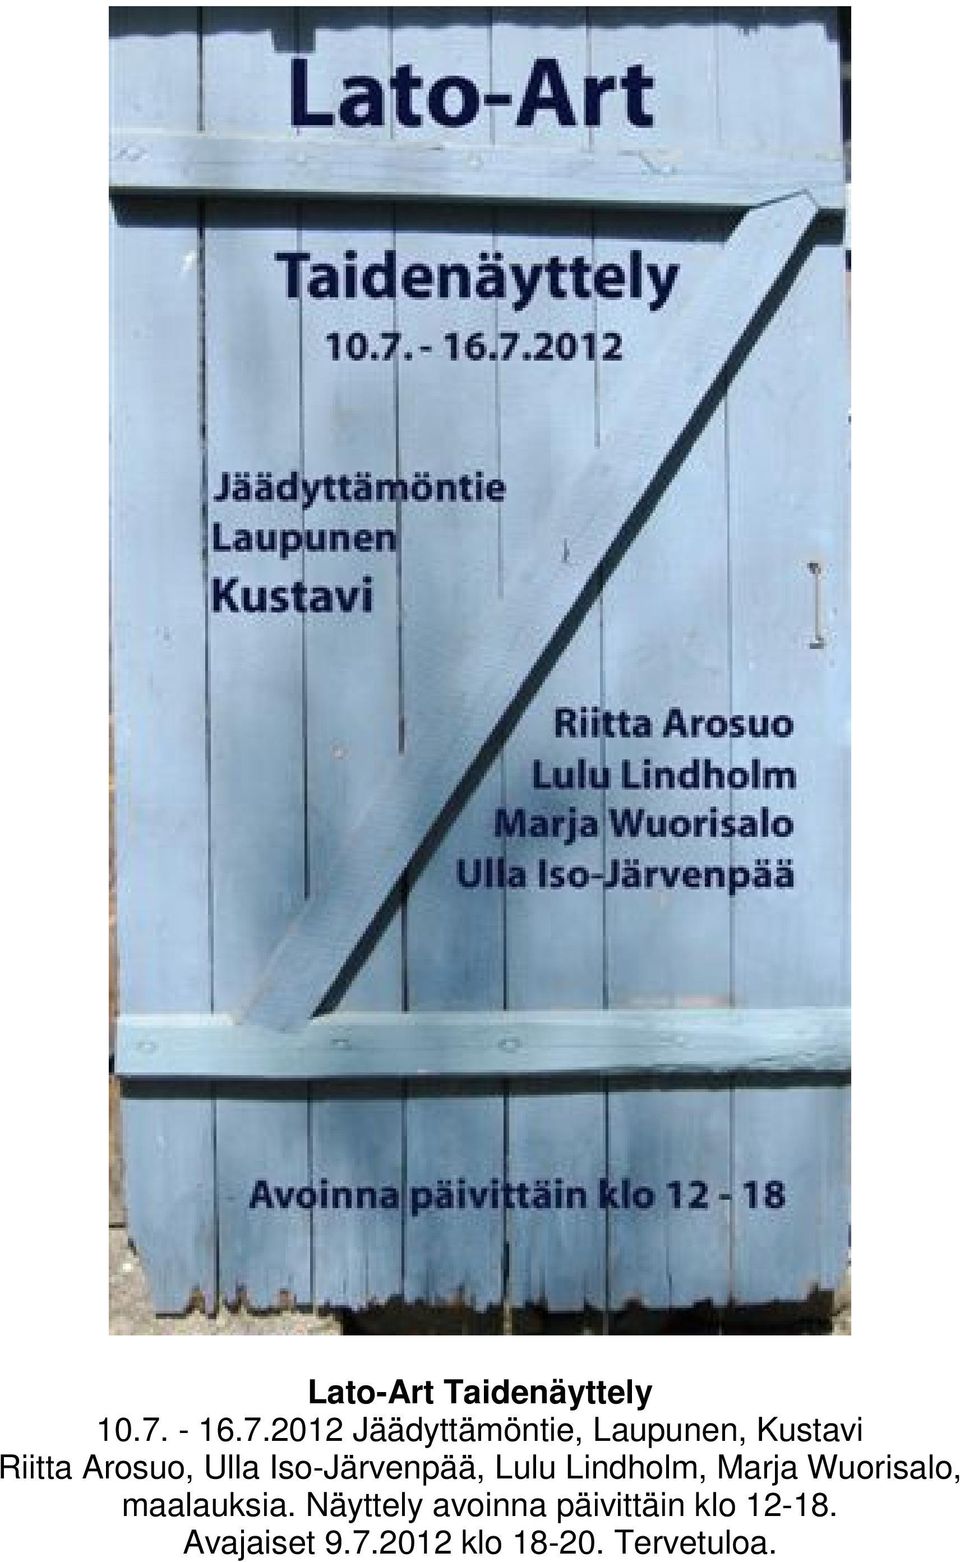 2012 Jäädyttämöntie, Laupunen, Kustavi Riitta Arosuo, Ulla